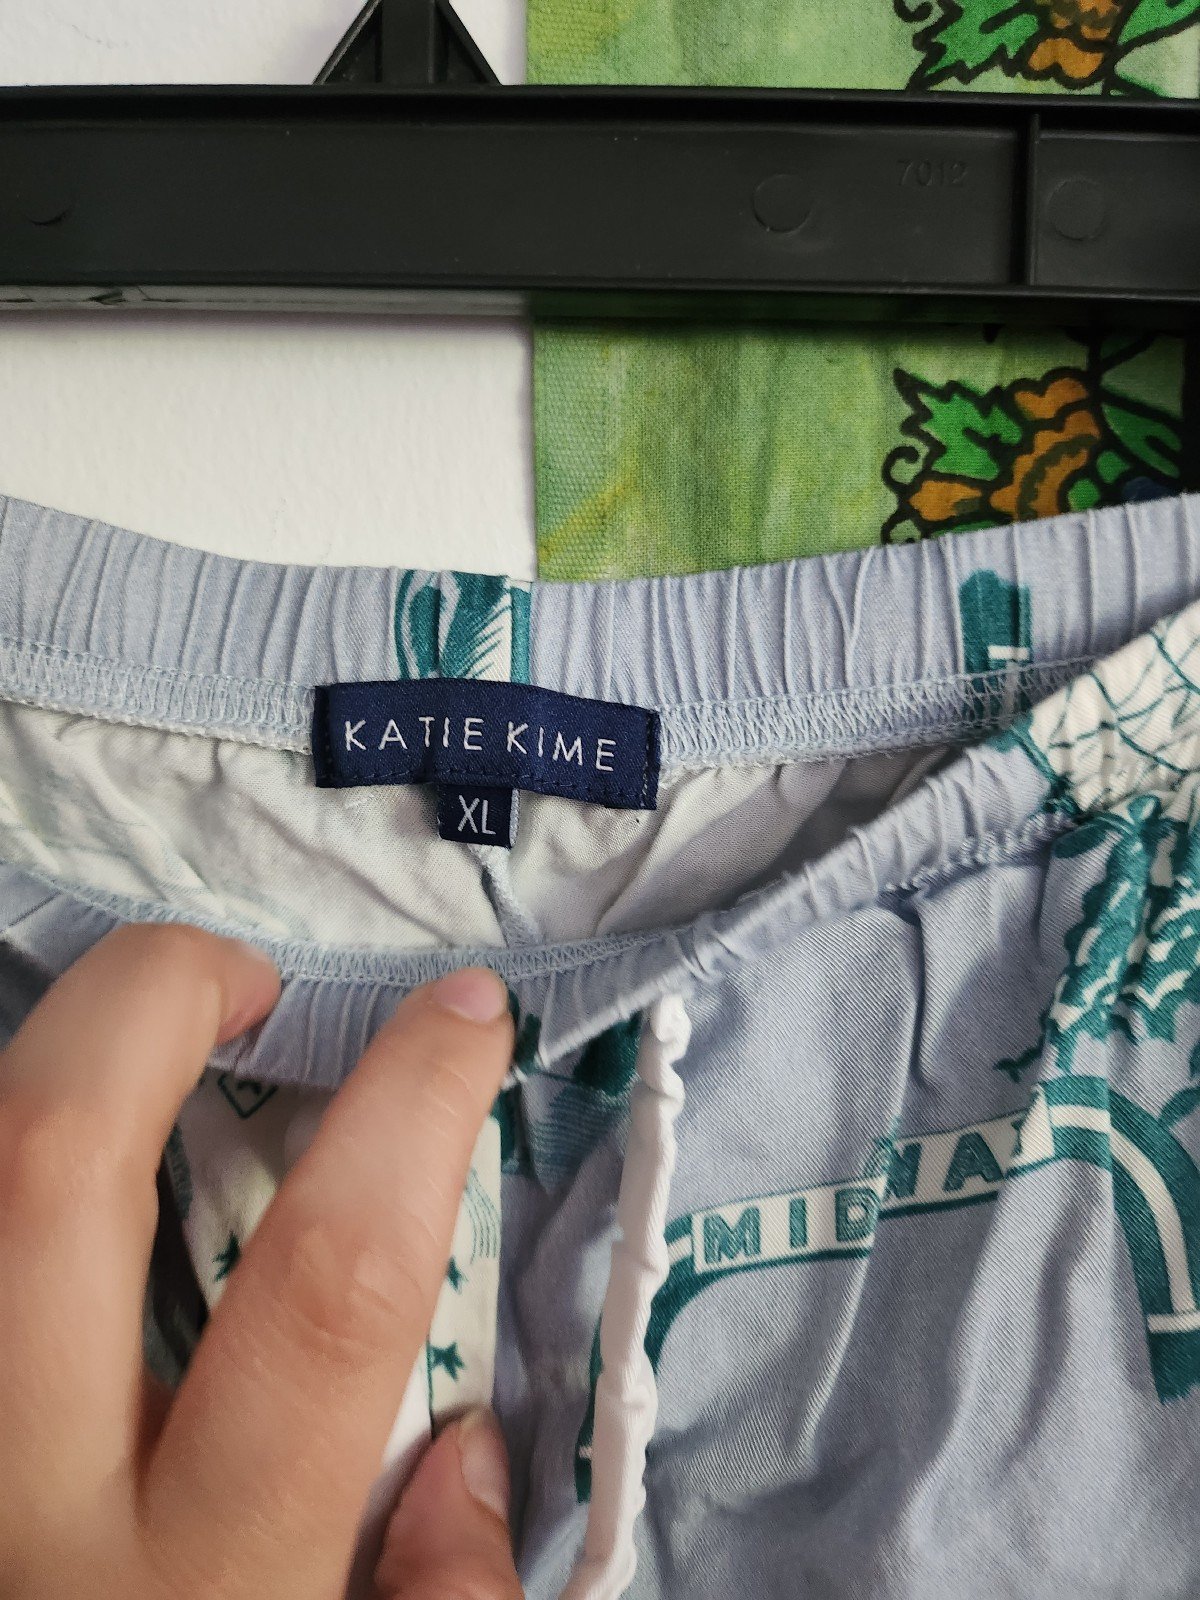 big discount Katie Kime XL sleep pants MZ8WGtABu US Outlet